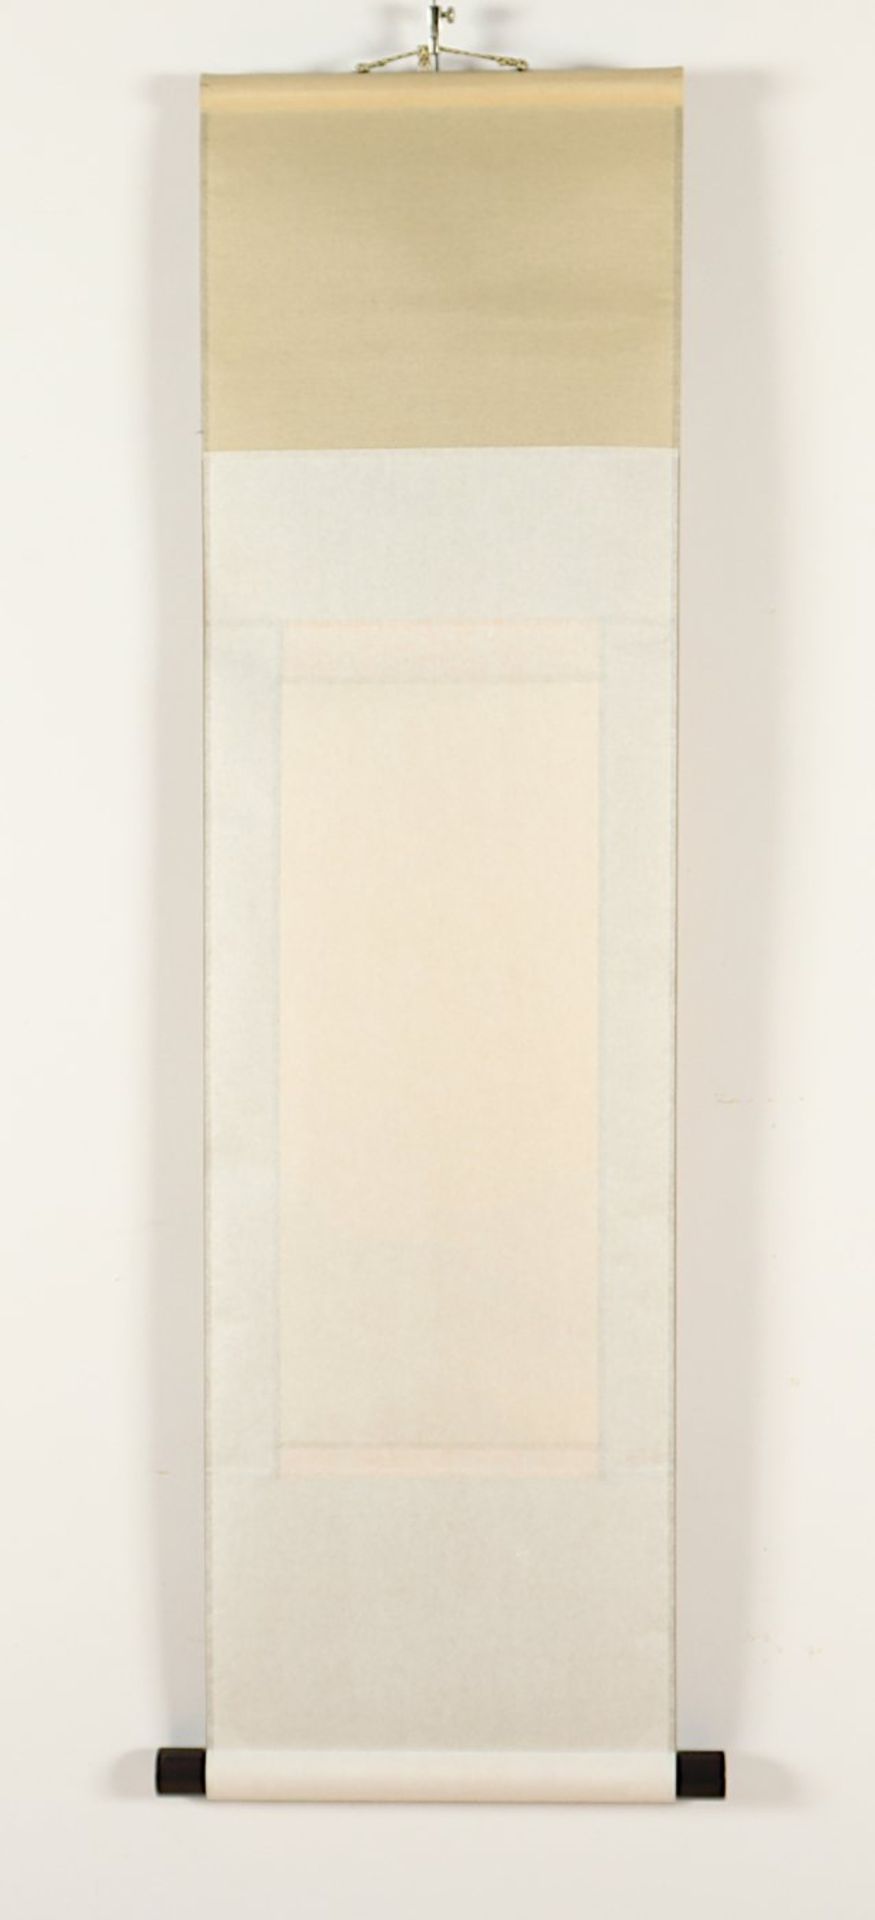 ROLLBILD, Tusche auf Stoff, Landschaft bei Vollmond, Siegel, 36 x 15,5, montiert, JAPAN, 20.Jh. - Bild 3 aus 3